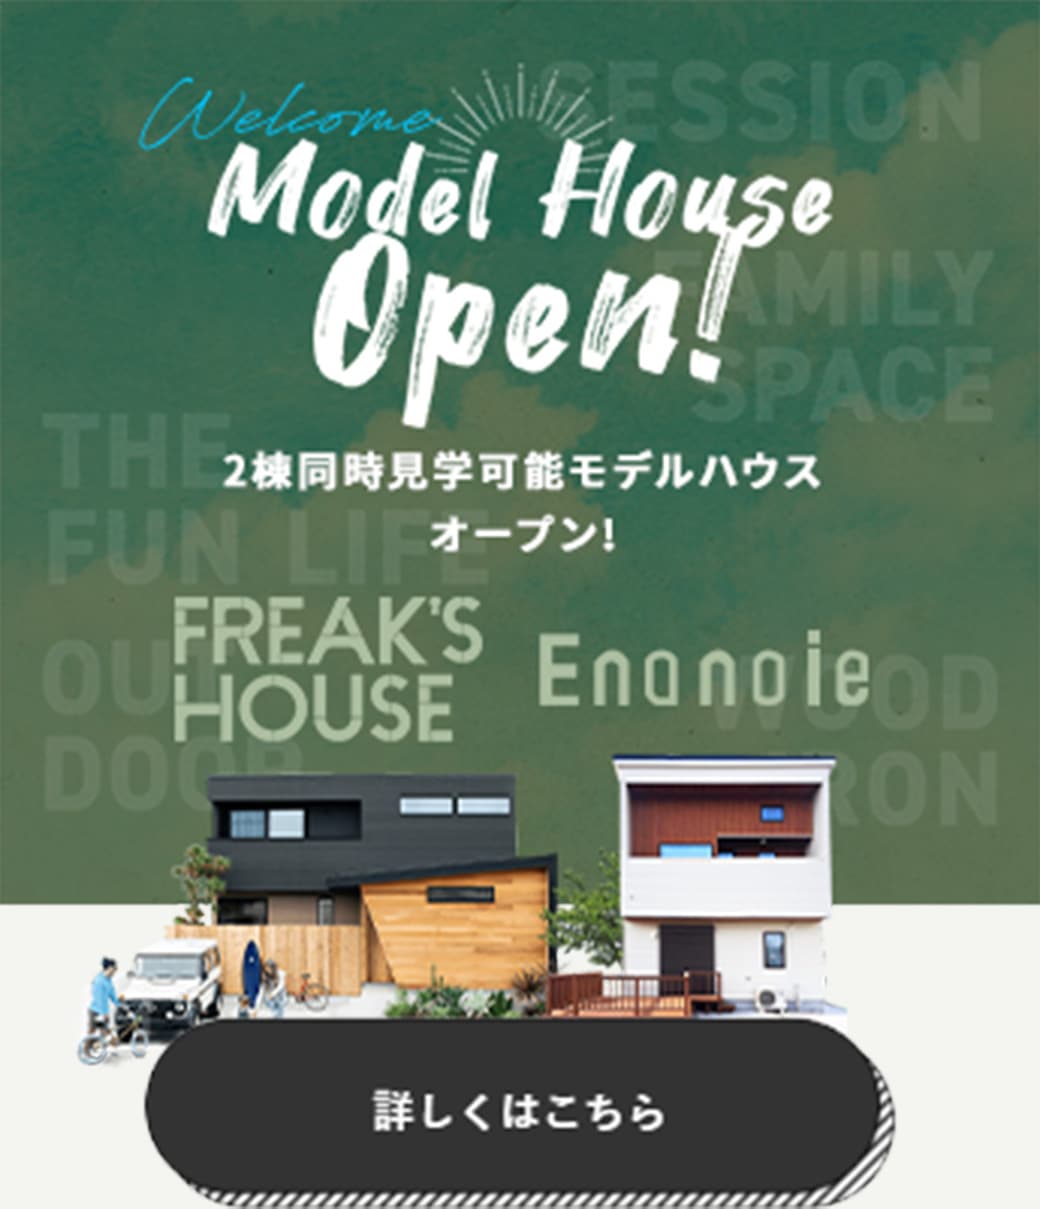 2棟同時見学可能モデルハウスオープン！